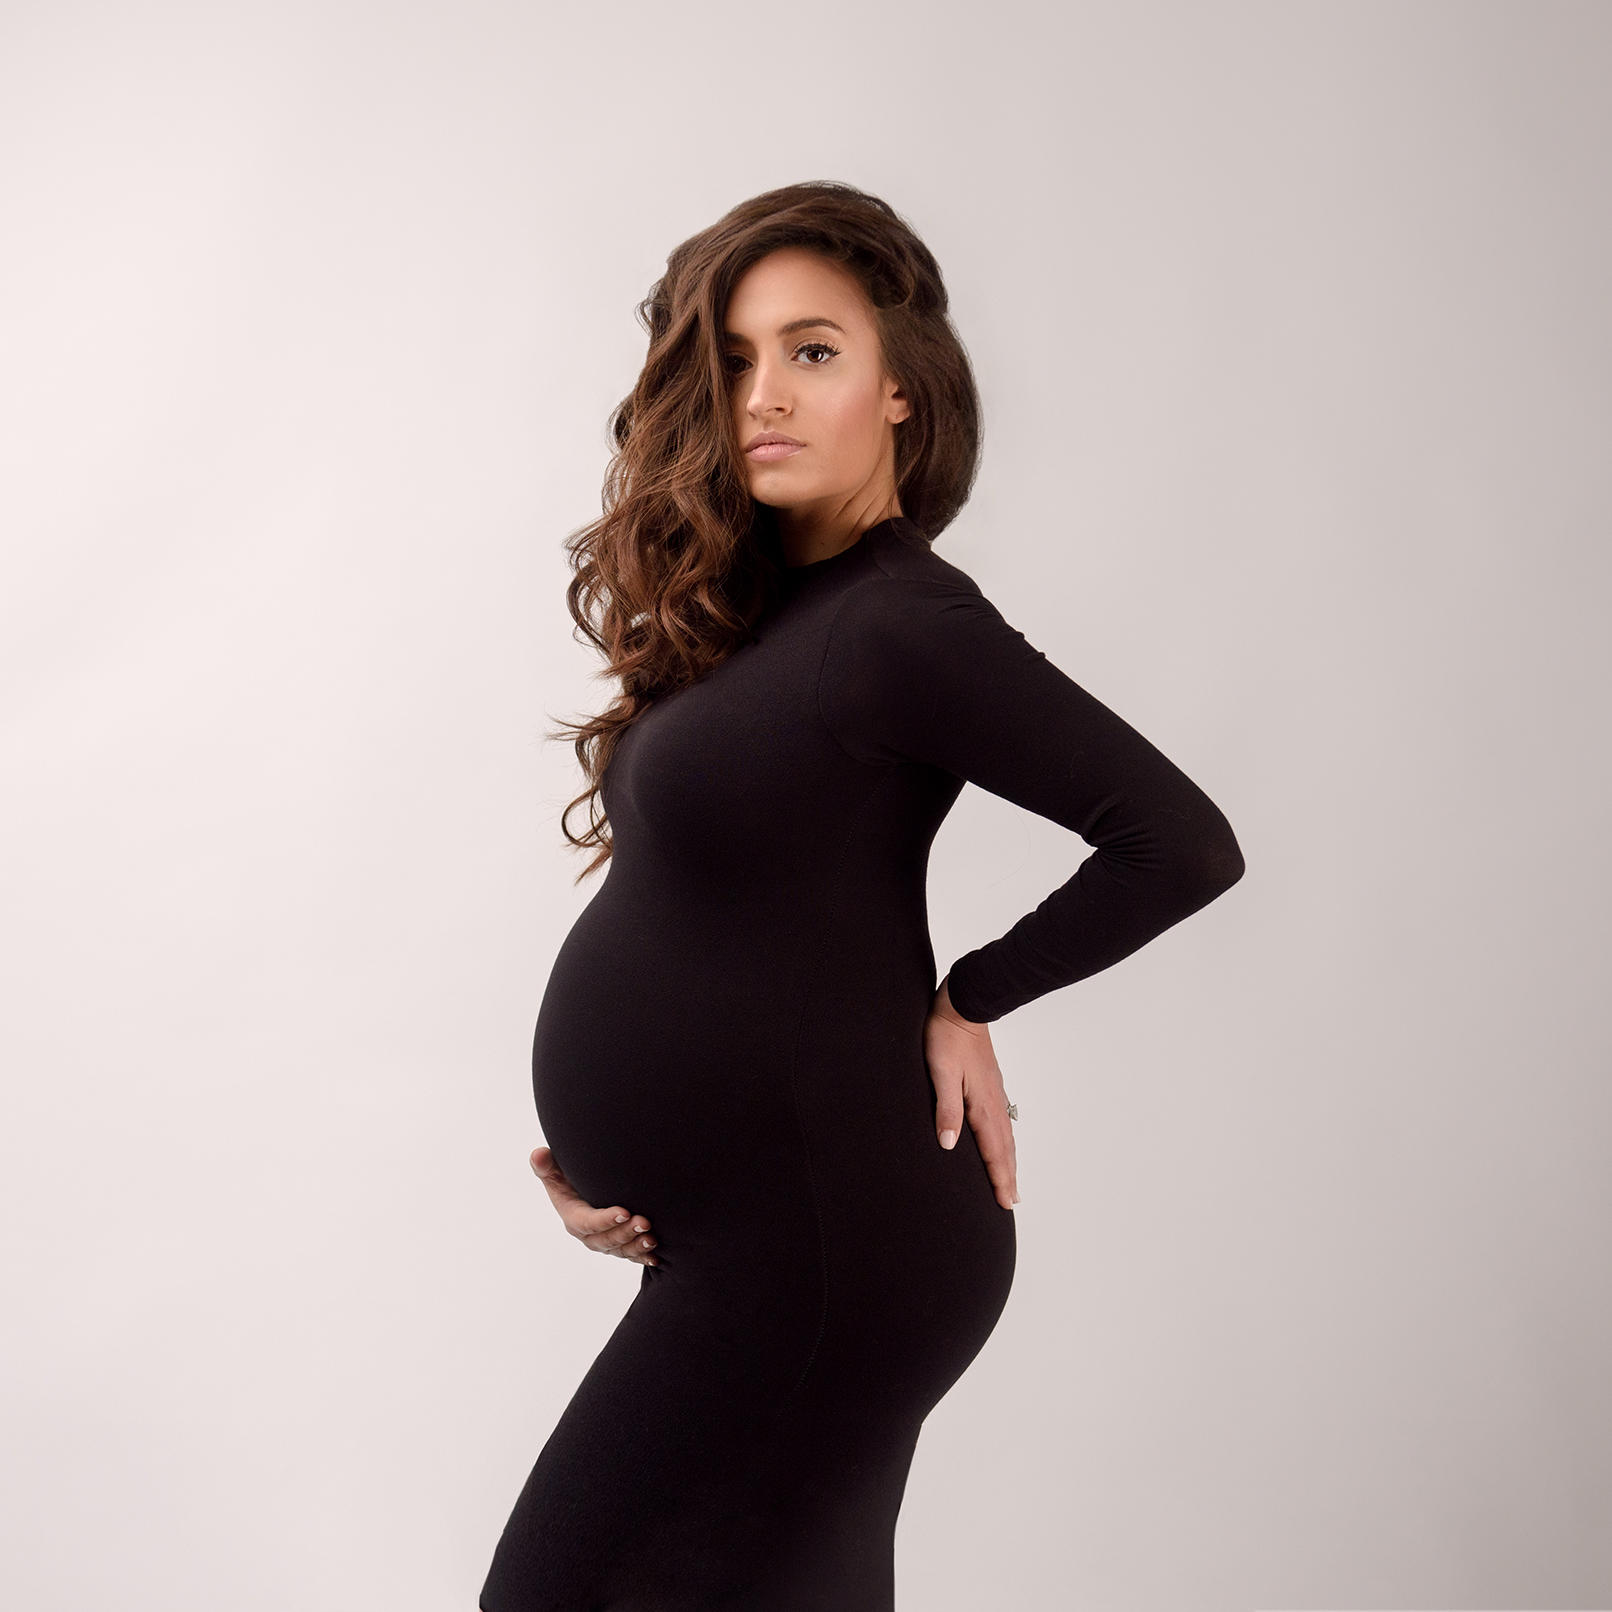 Фотосессия беременной в черном платье